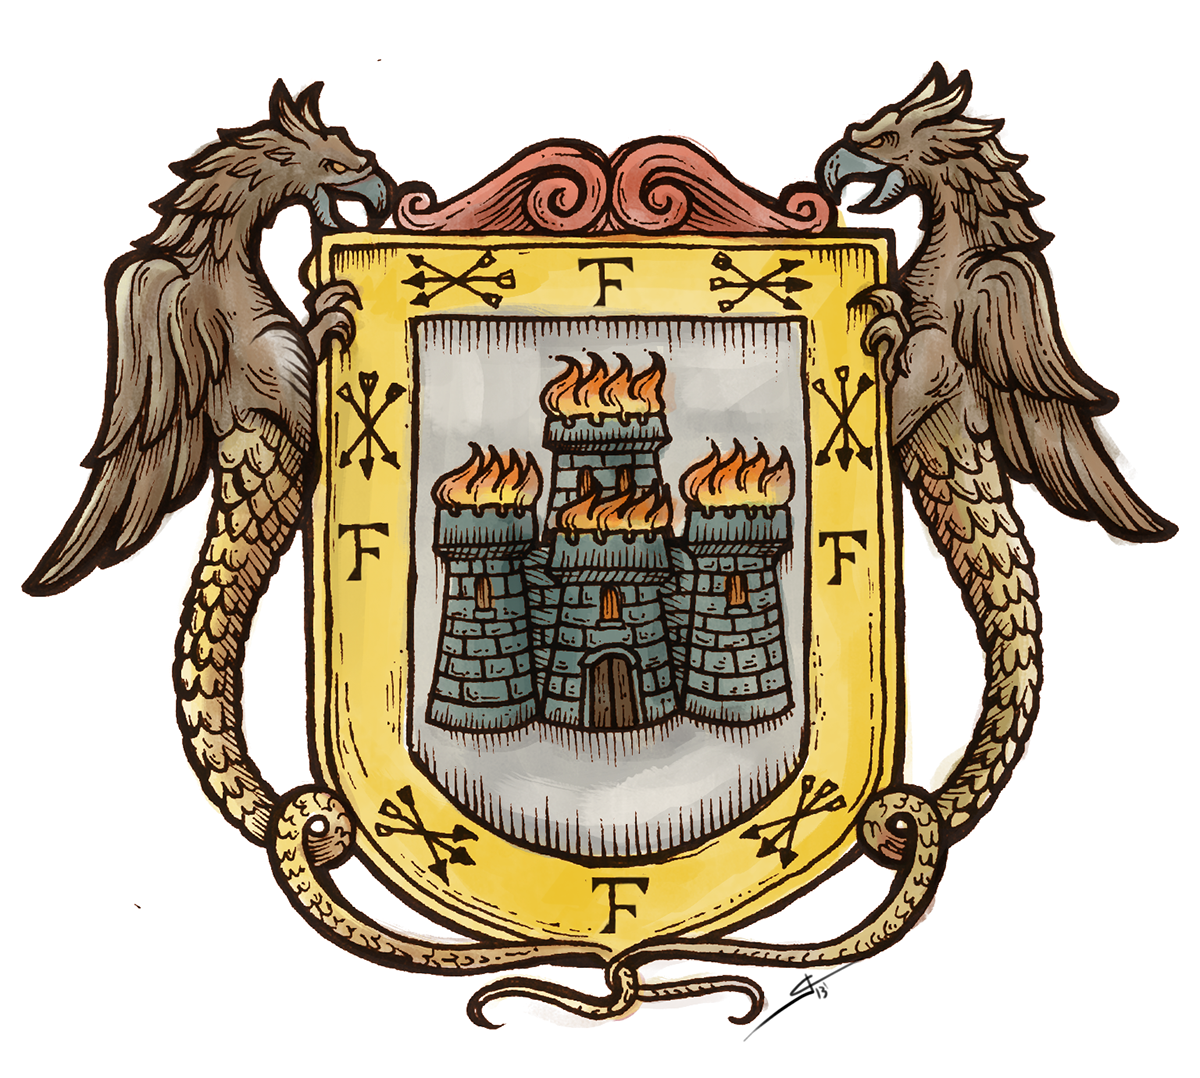 la serena chile sereno Añañuca escudo coat of arms colonial aniversário anniversary